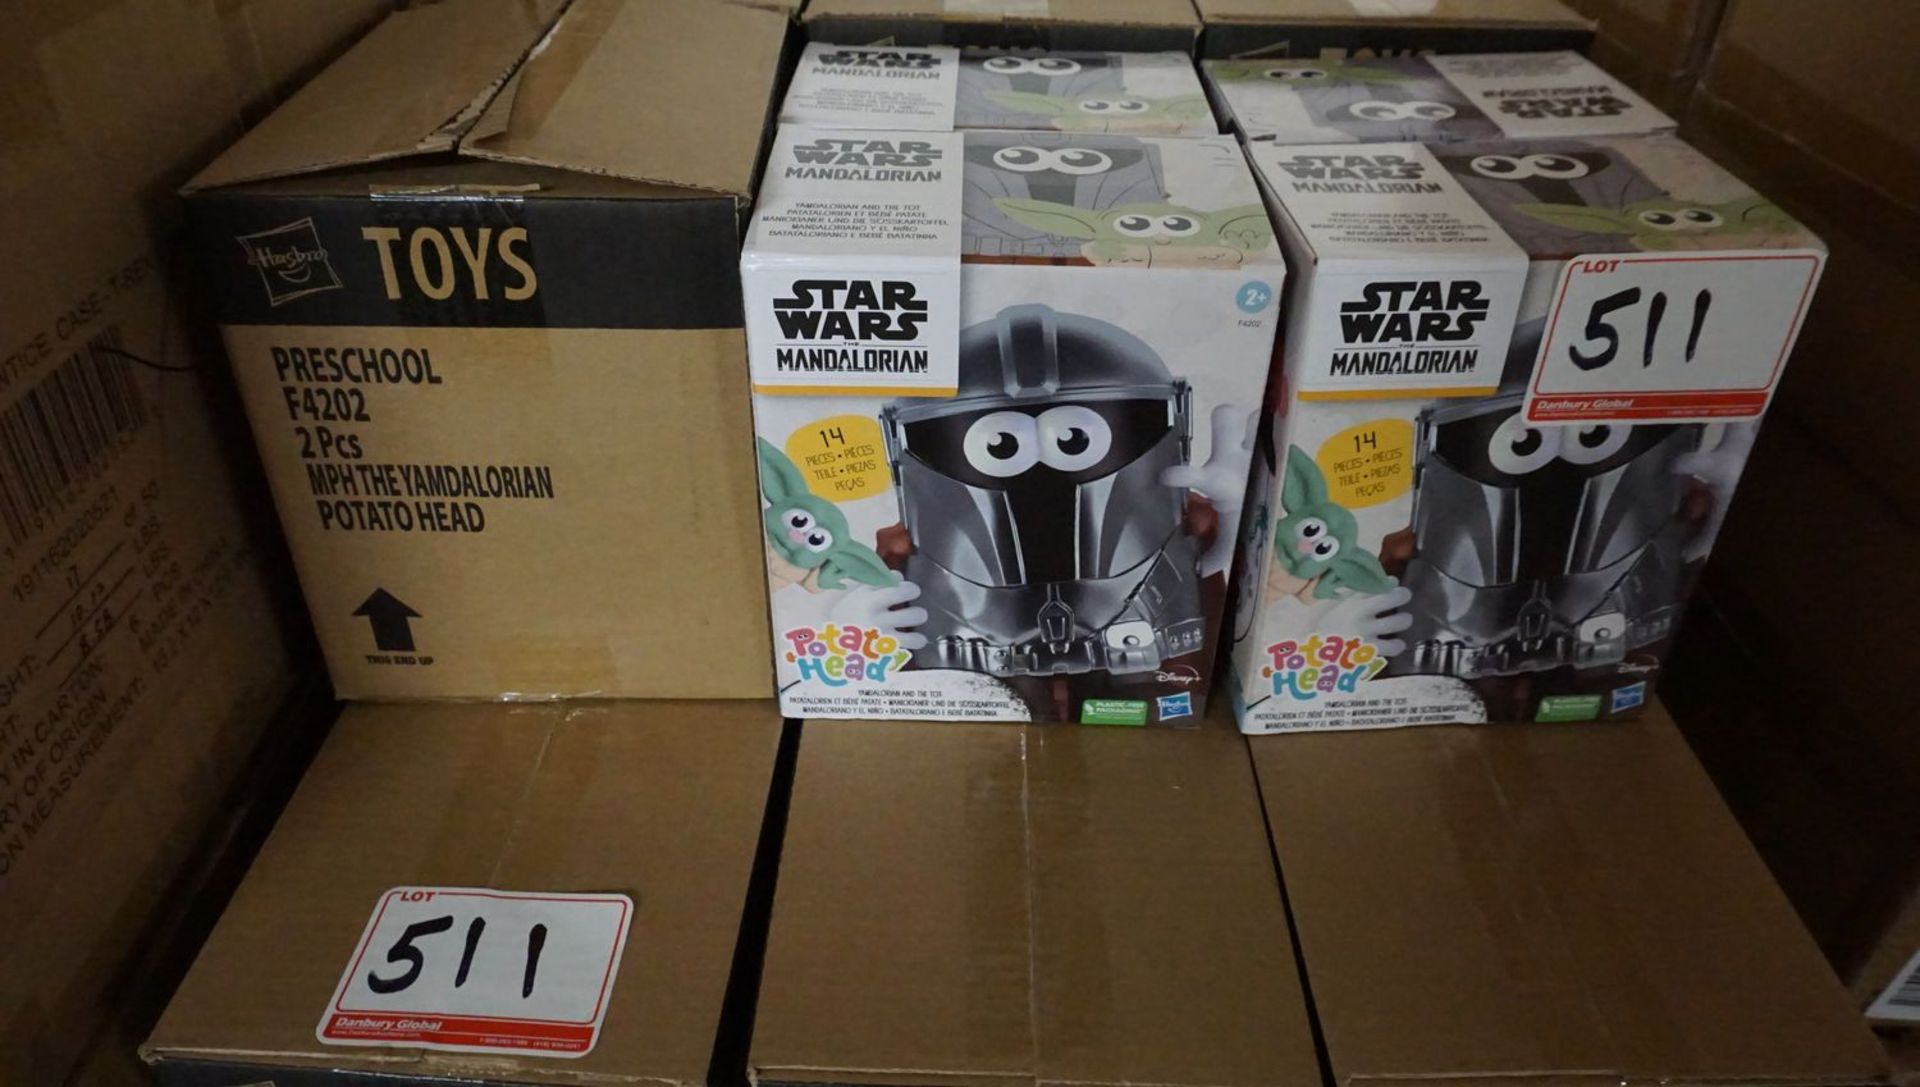 LOT - (55 BOXES) STARWARS MANDALORIAN TOYS (2 PCS/BOX) & (16 BOXES) DINO WORKSHOP CASES (6 PCS/BOX) - Image 4 of 4